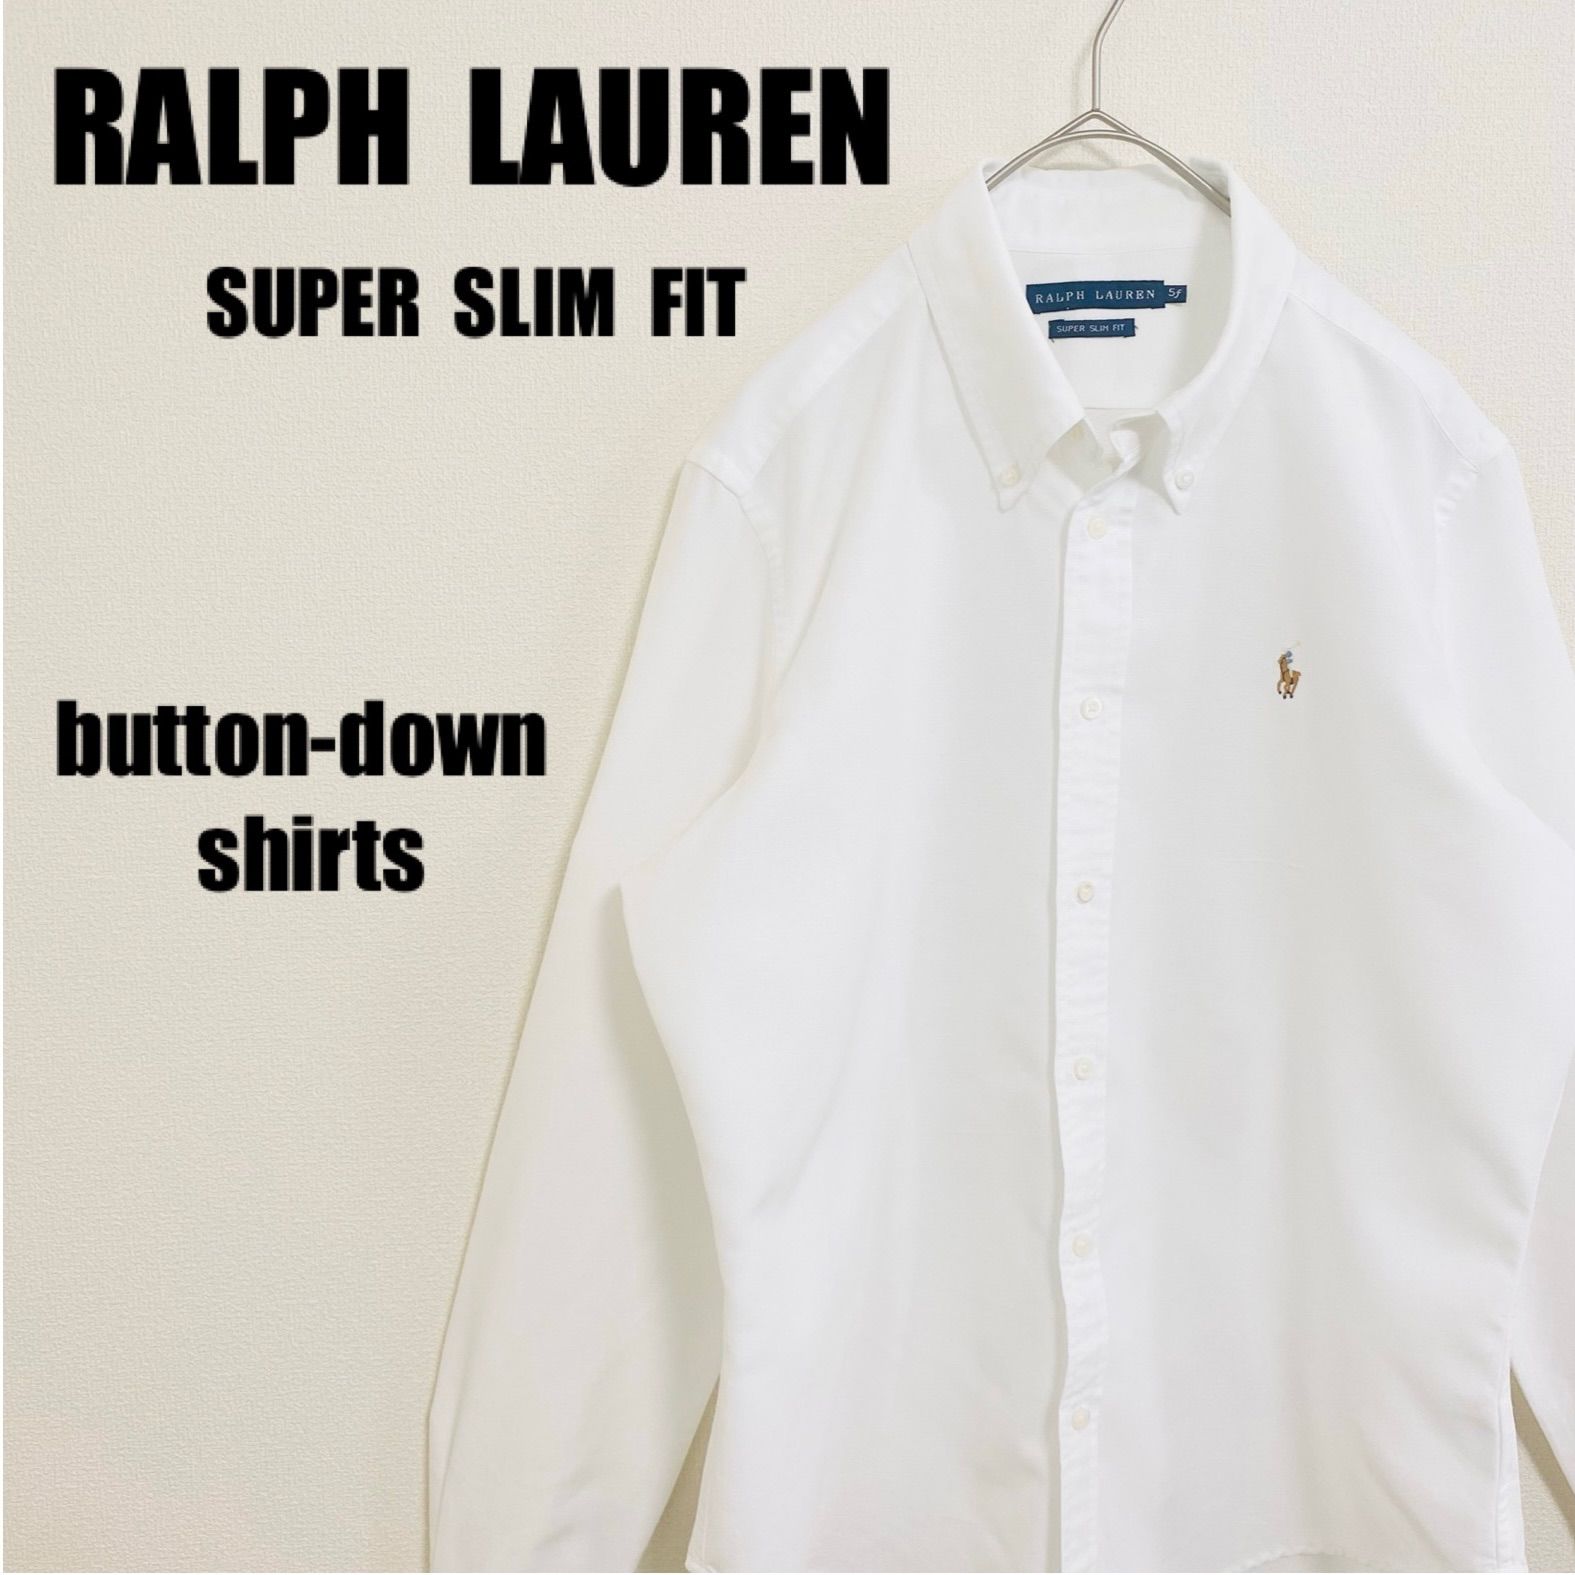 ラルフローレン RALPH LAUREN ボタンダウンシャツ スーパースリムフィット BDシャツ 長袖シャツ 白 ホワイト メンズ Sサイズ  レディース Lサイズ 相当 男女兼用 ユニセックス 刺繍ポニー アメカジ オーバーサイズ